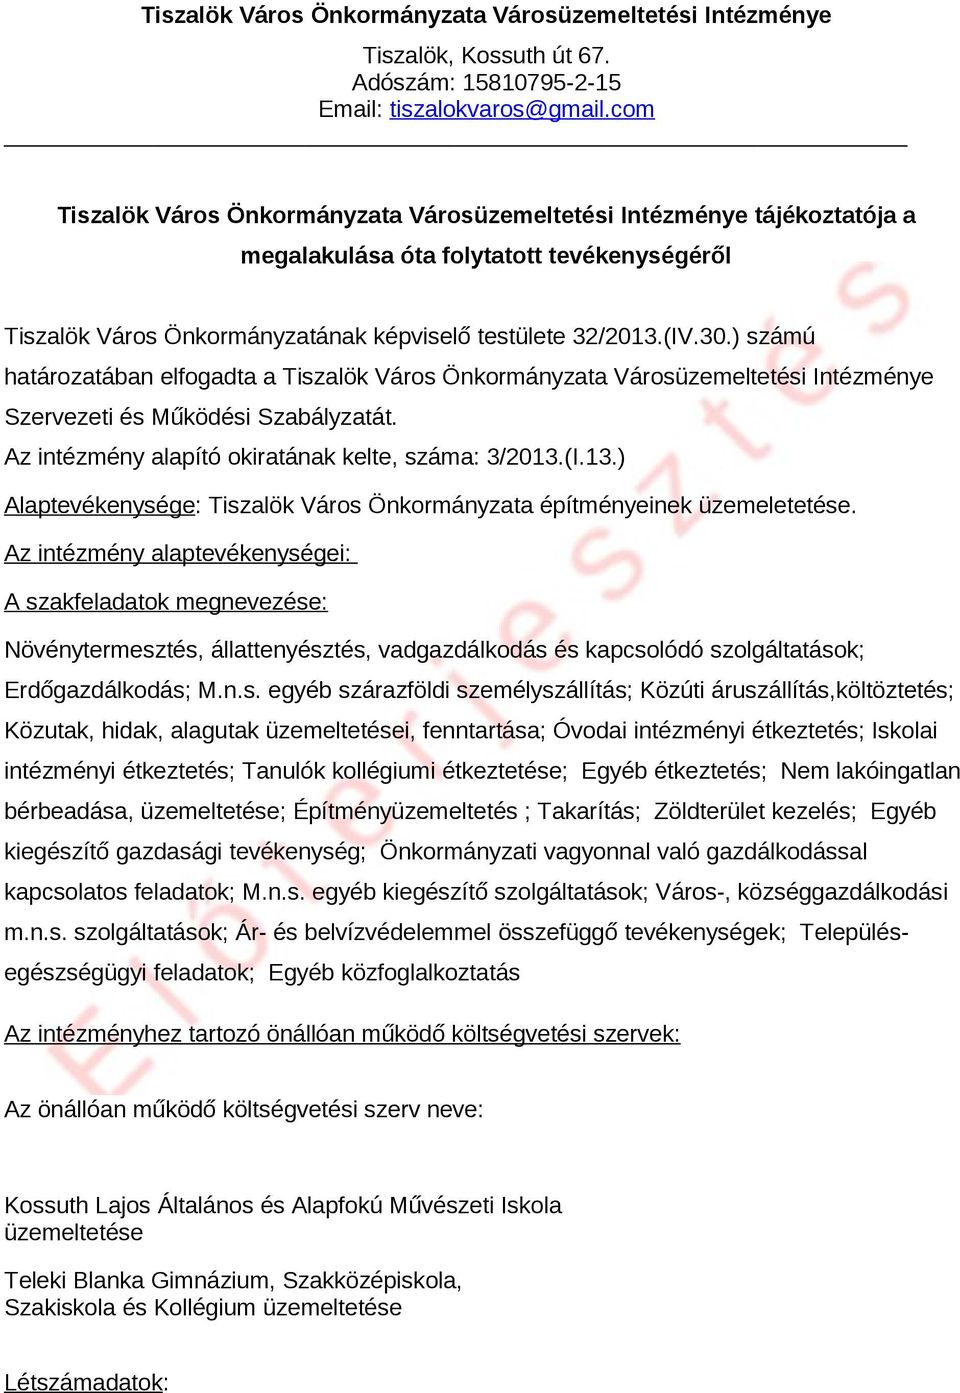 ) számú határozatába elfogadta a Tiszalök Város Ökormáyzata Városüzemeltetési Itézméye Szervezeti és Működési Szabályzatát. Az itézméy alapító okiratáak kelte, száma: 3/2013.